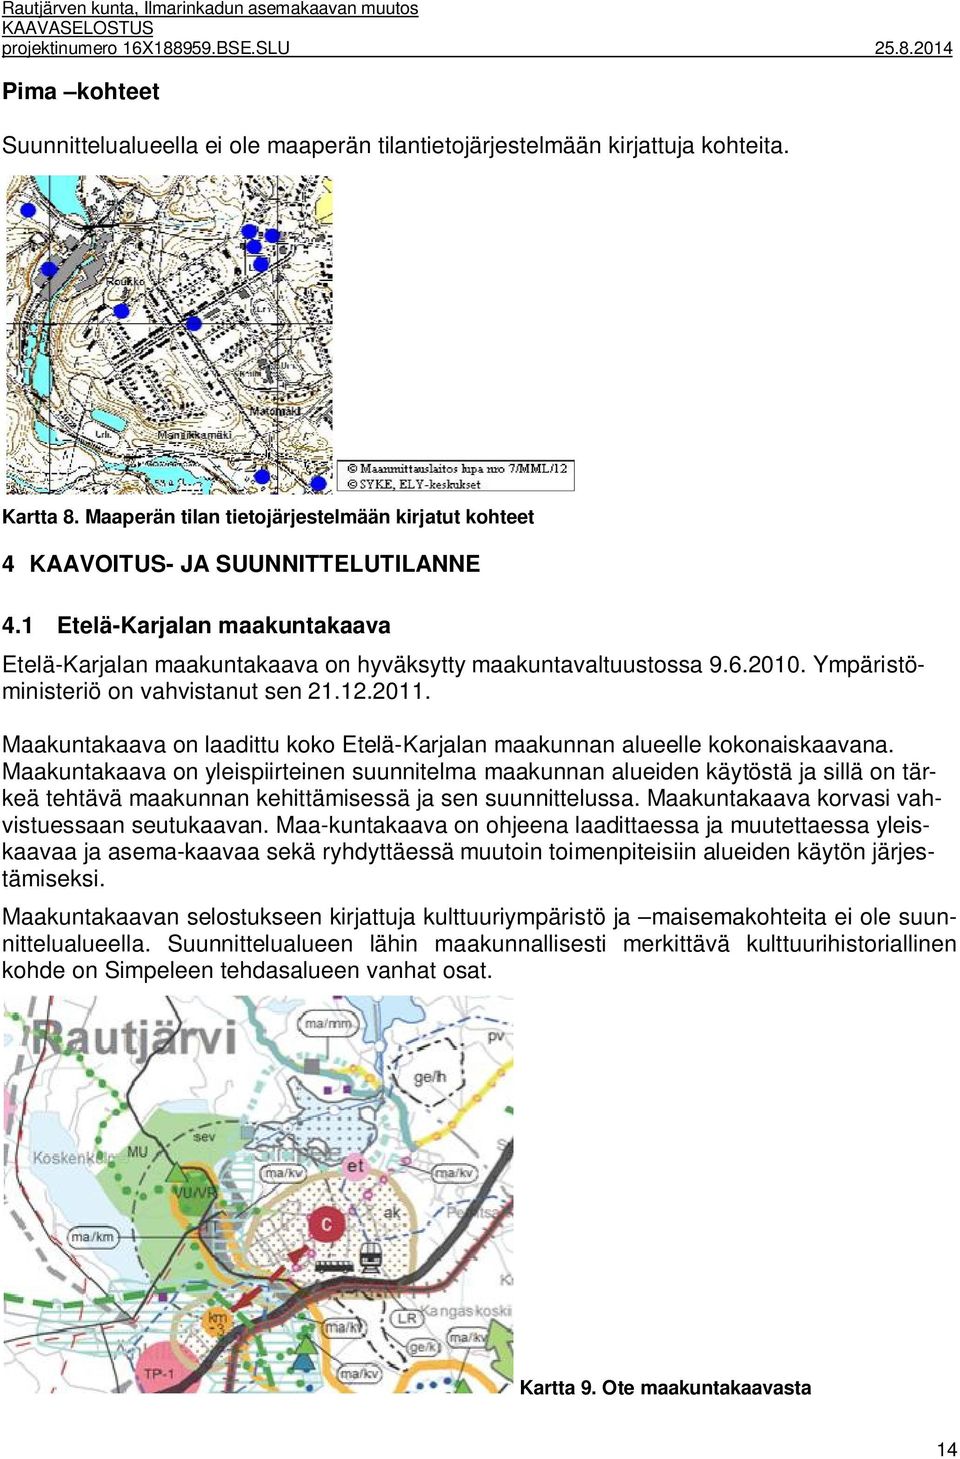 Ympäristöministeriö on vahvistanut sen 21.12.2011. Maakuntakaava on laadittu koko Etelä-Karjalan maakunnan alueelle kokonaiskaavana.